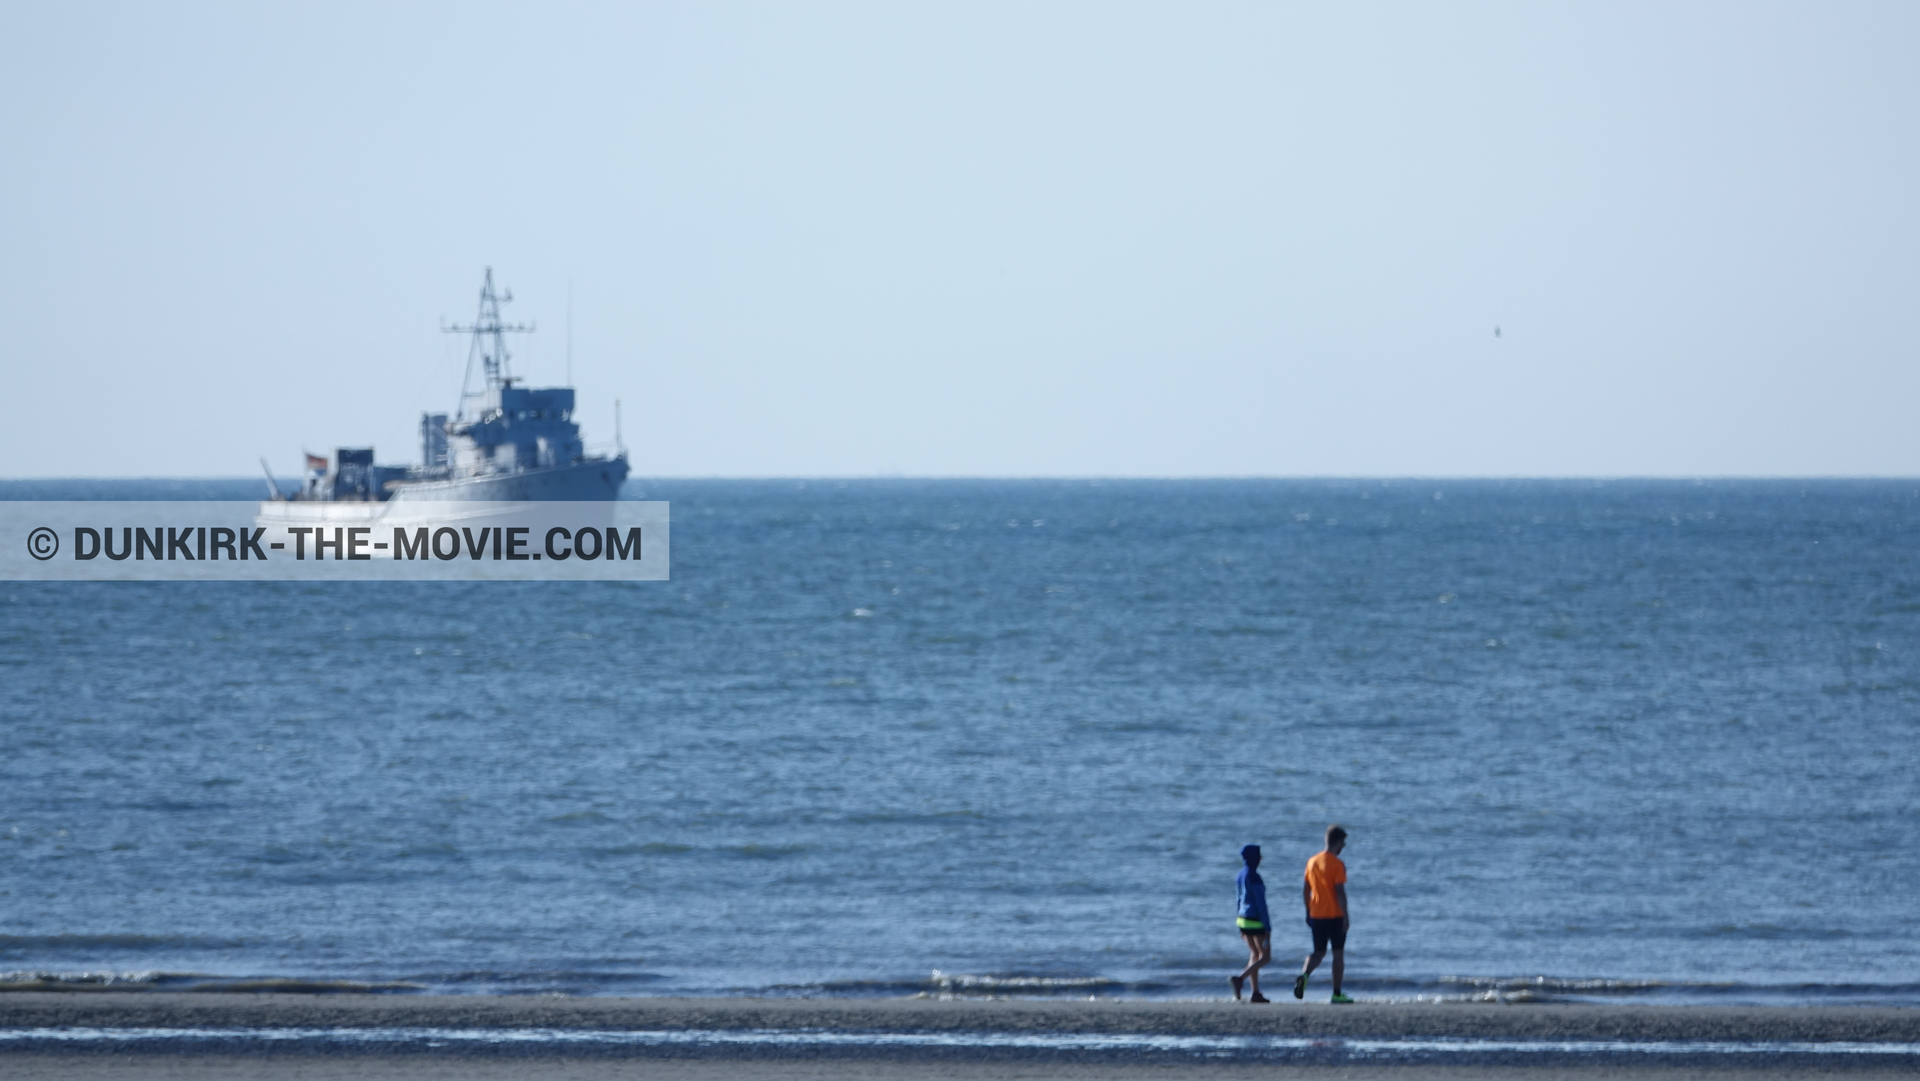 Fotos con F34 - Hr.Ms. Sittard, playa,  durante el rodaje de la película Dunkerque de Nolan